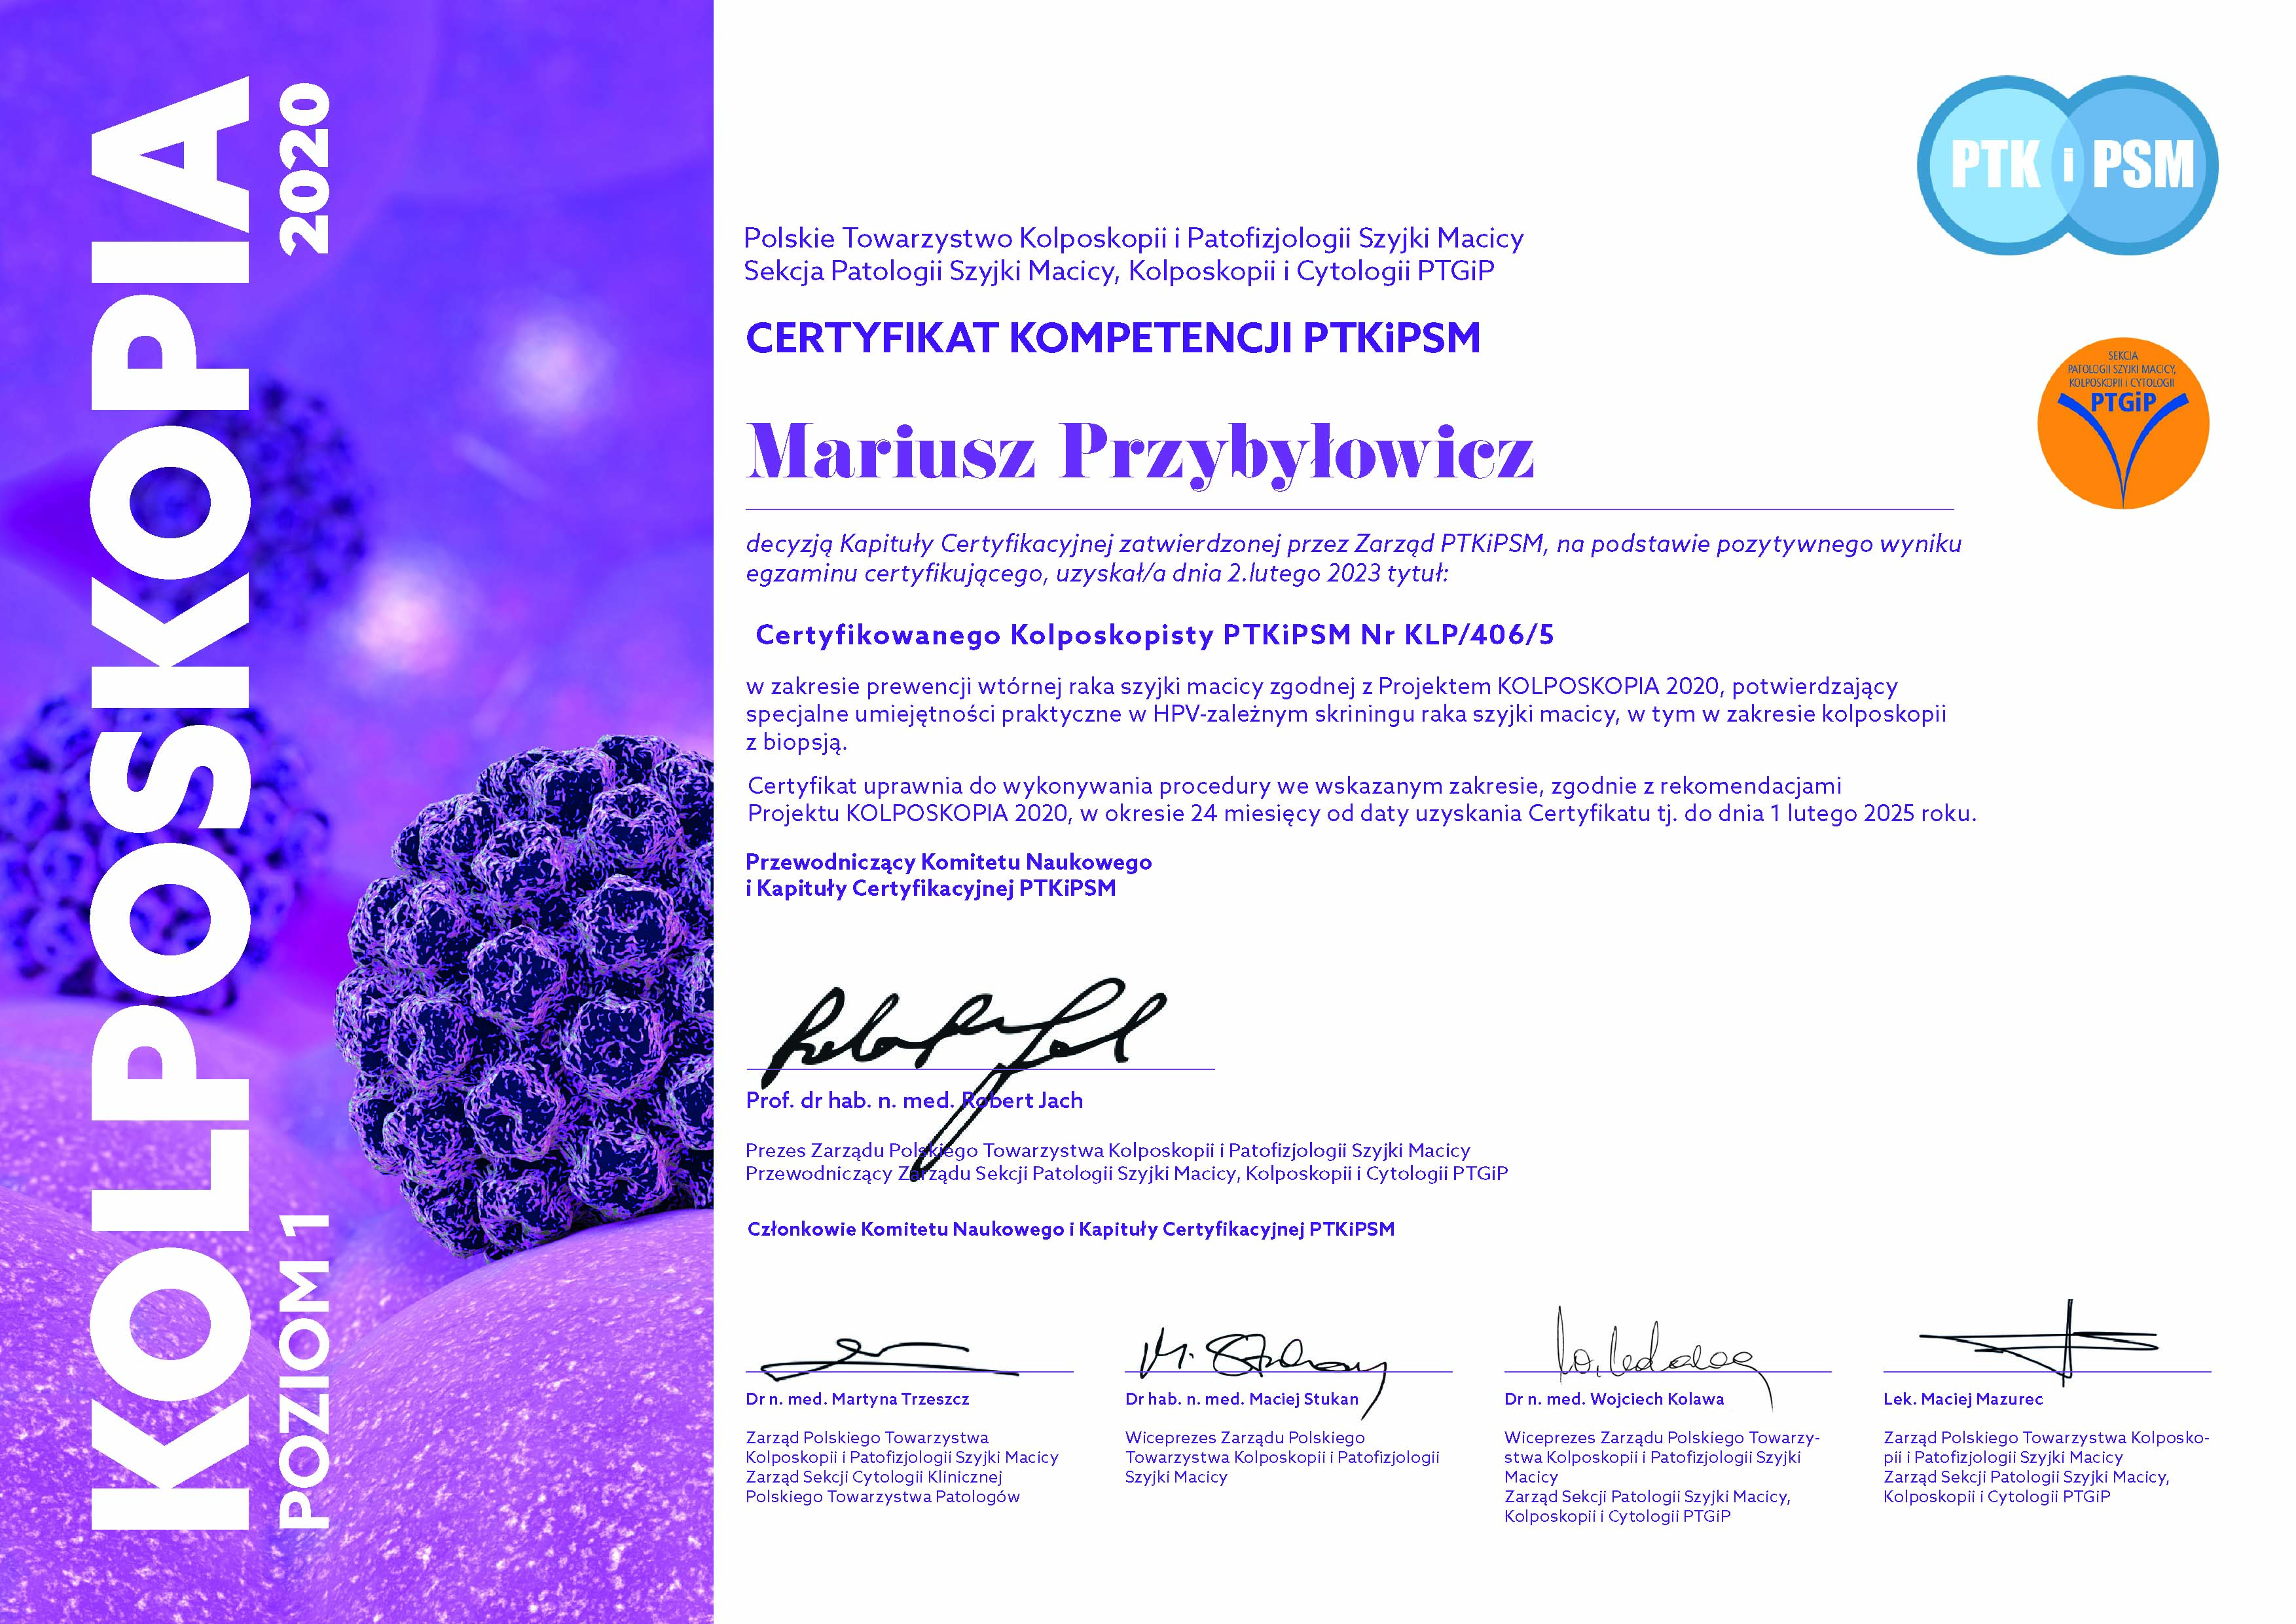 Certyfikat kompetencji PTKiPSM